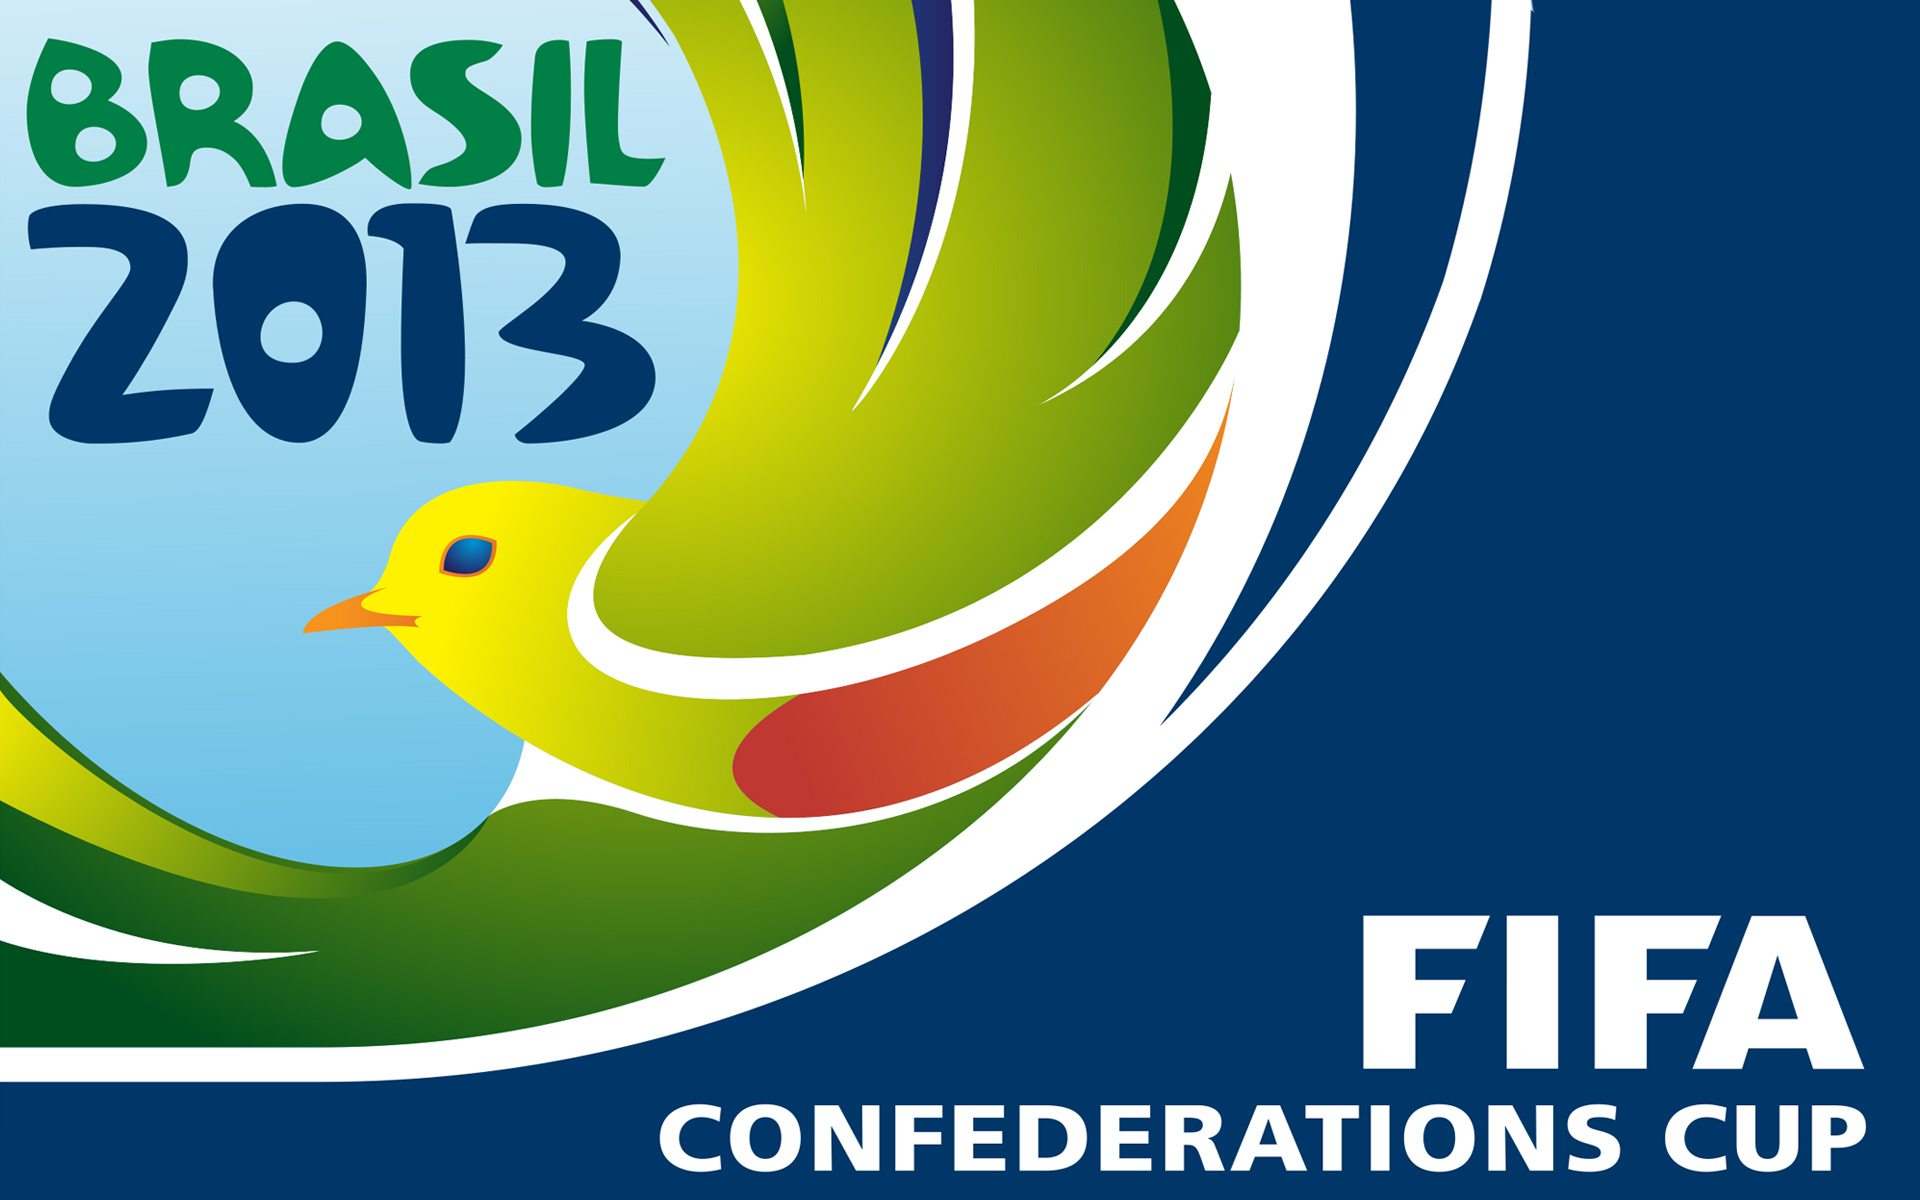 Confederation Cup 2013